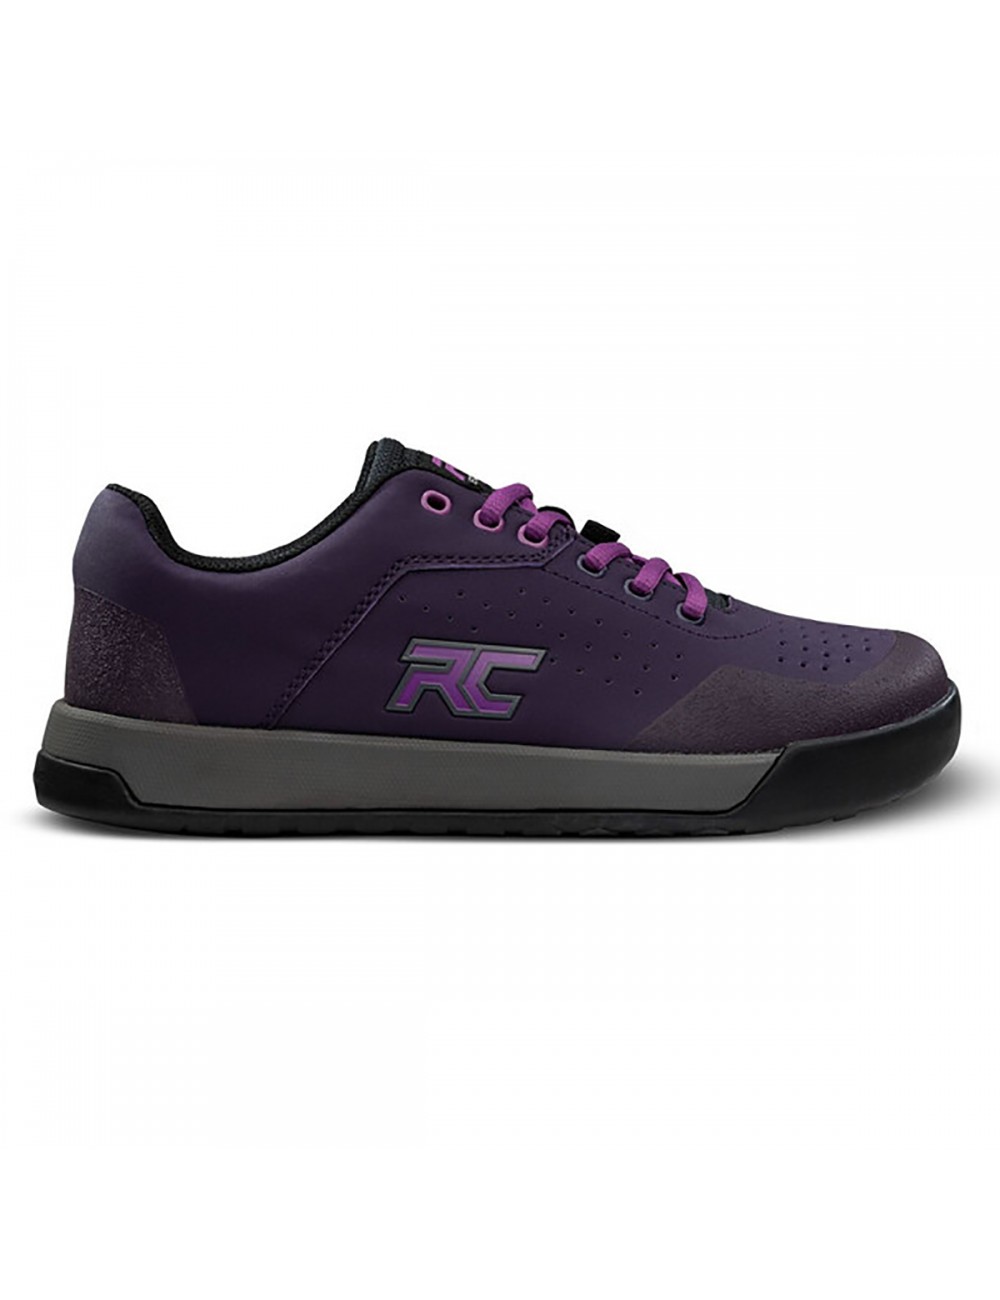 Ride Concepts Hellion Shoe - Purple